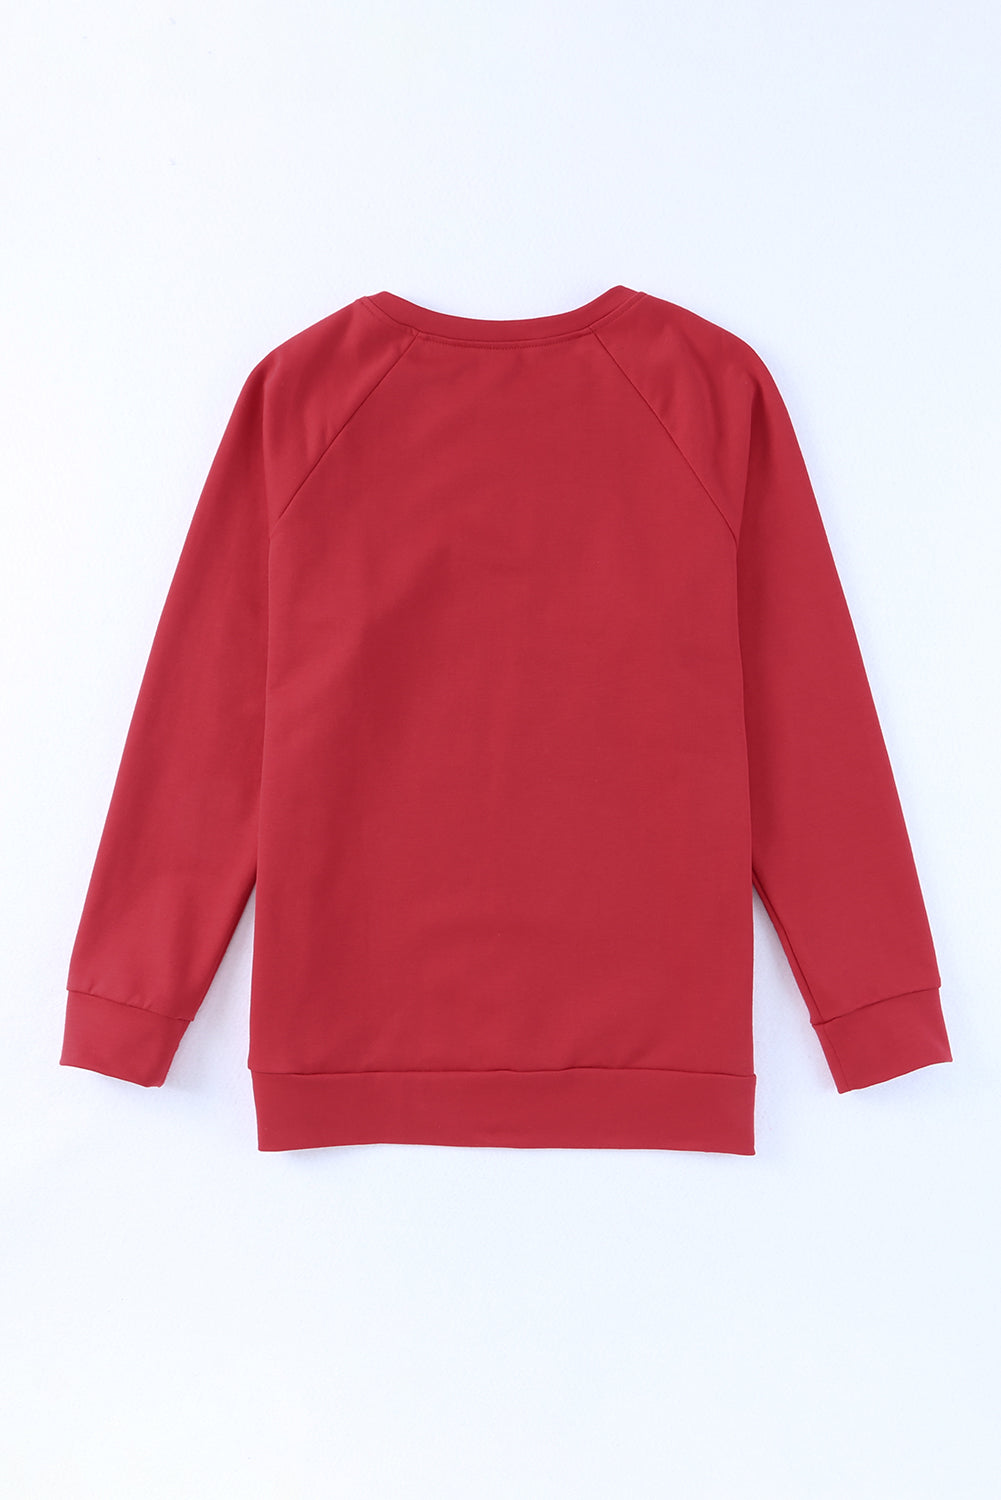 Feuriges rotes, einfarbiges Sweatshirt mit Raglanärmeln und Rundhalsausschnitt